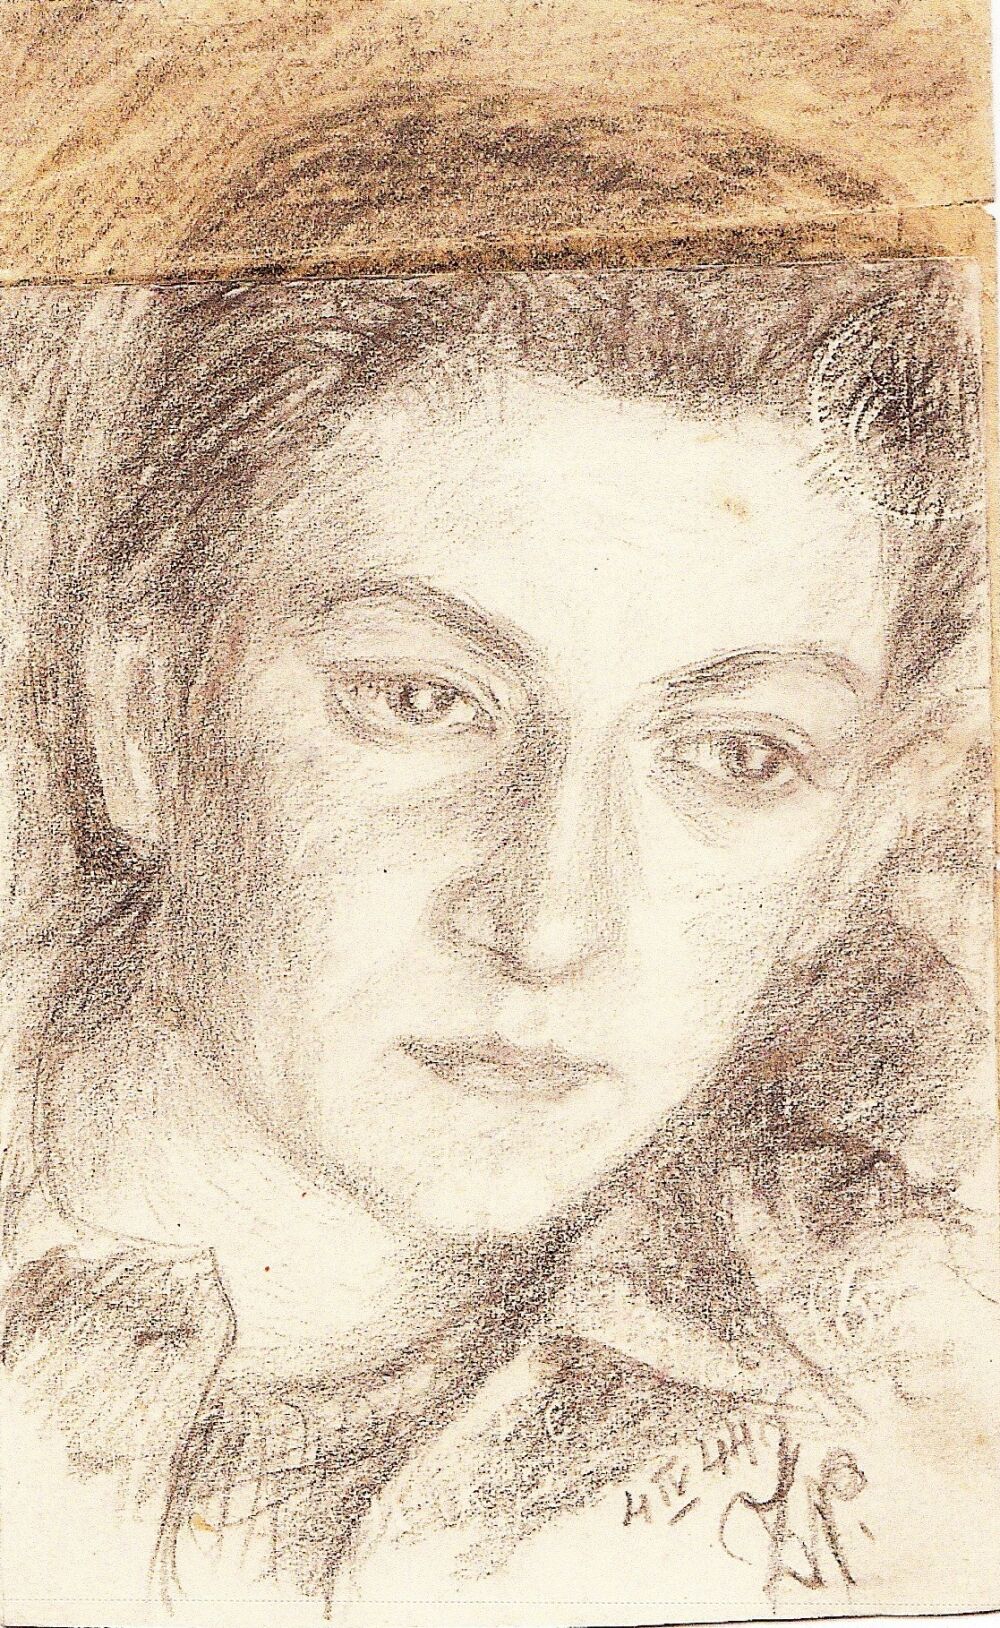 Zeichnung von Zofia, die ihre Freundin Wojtka zeigt